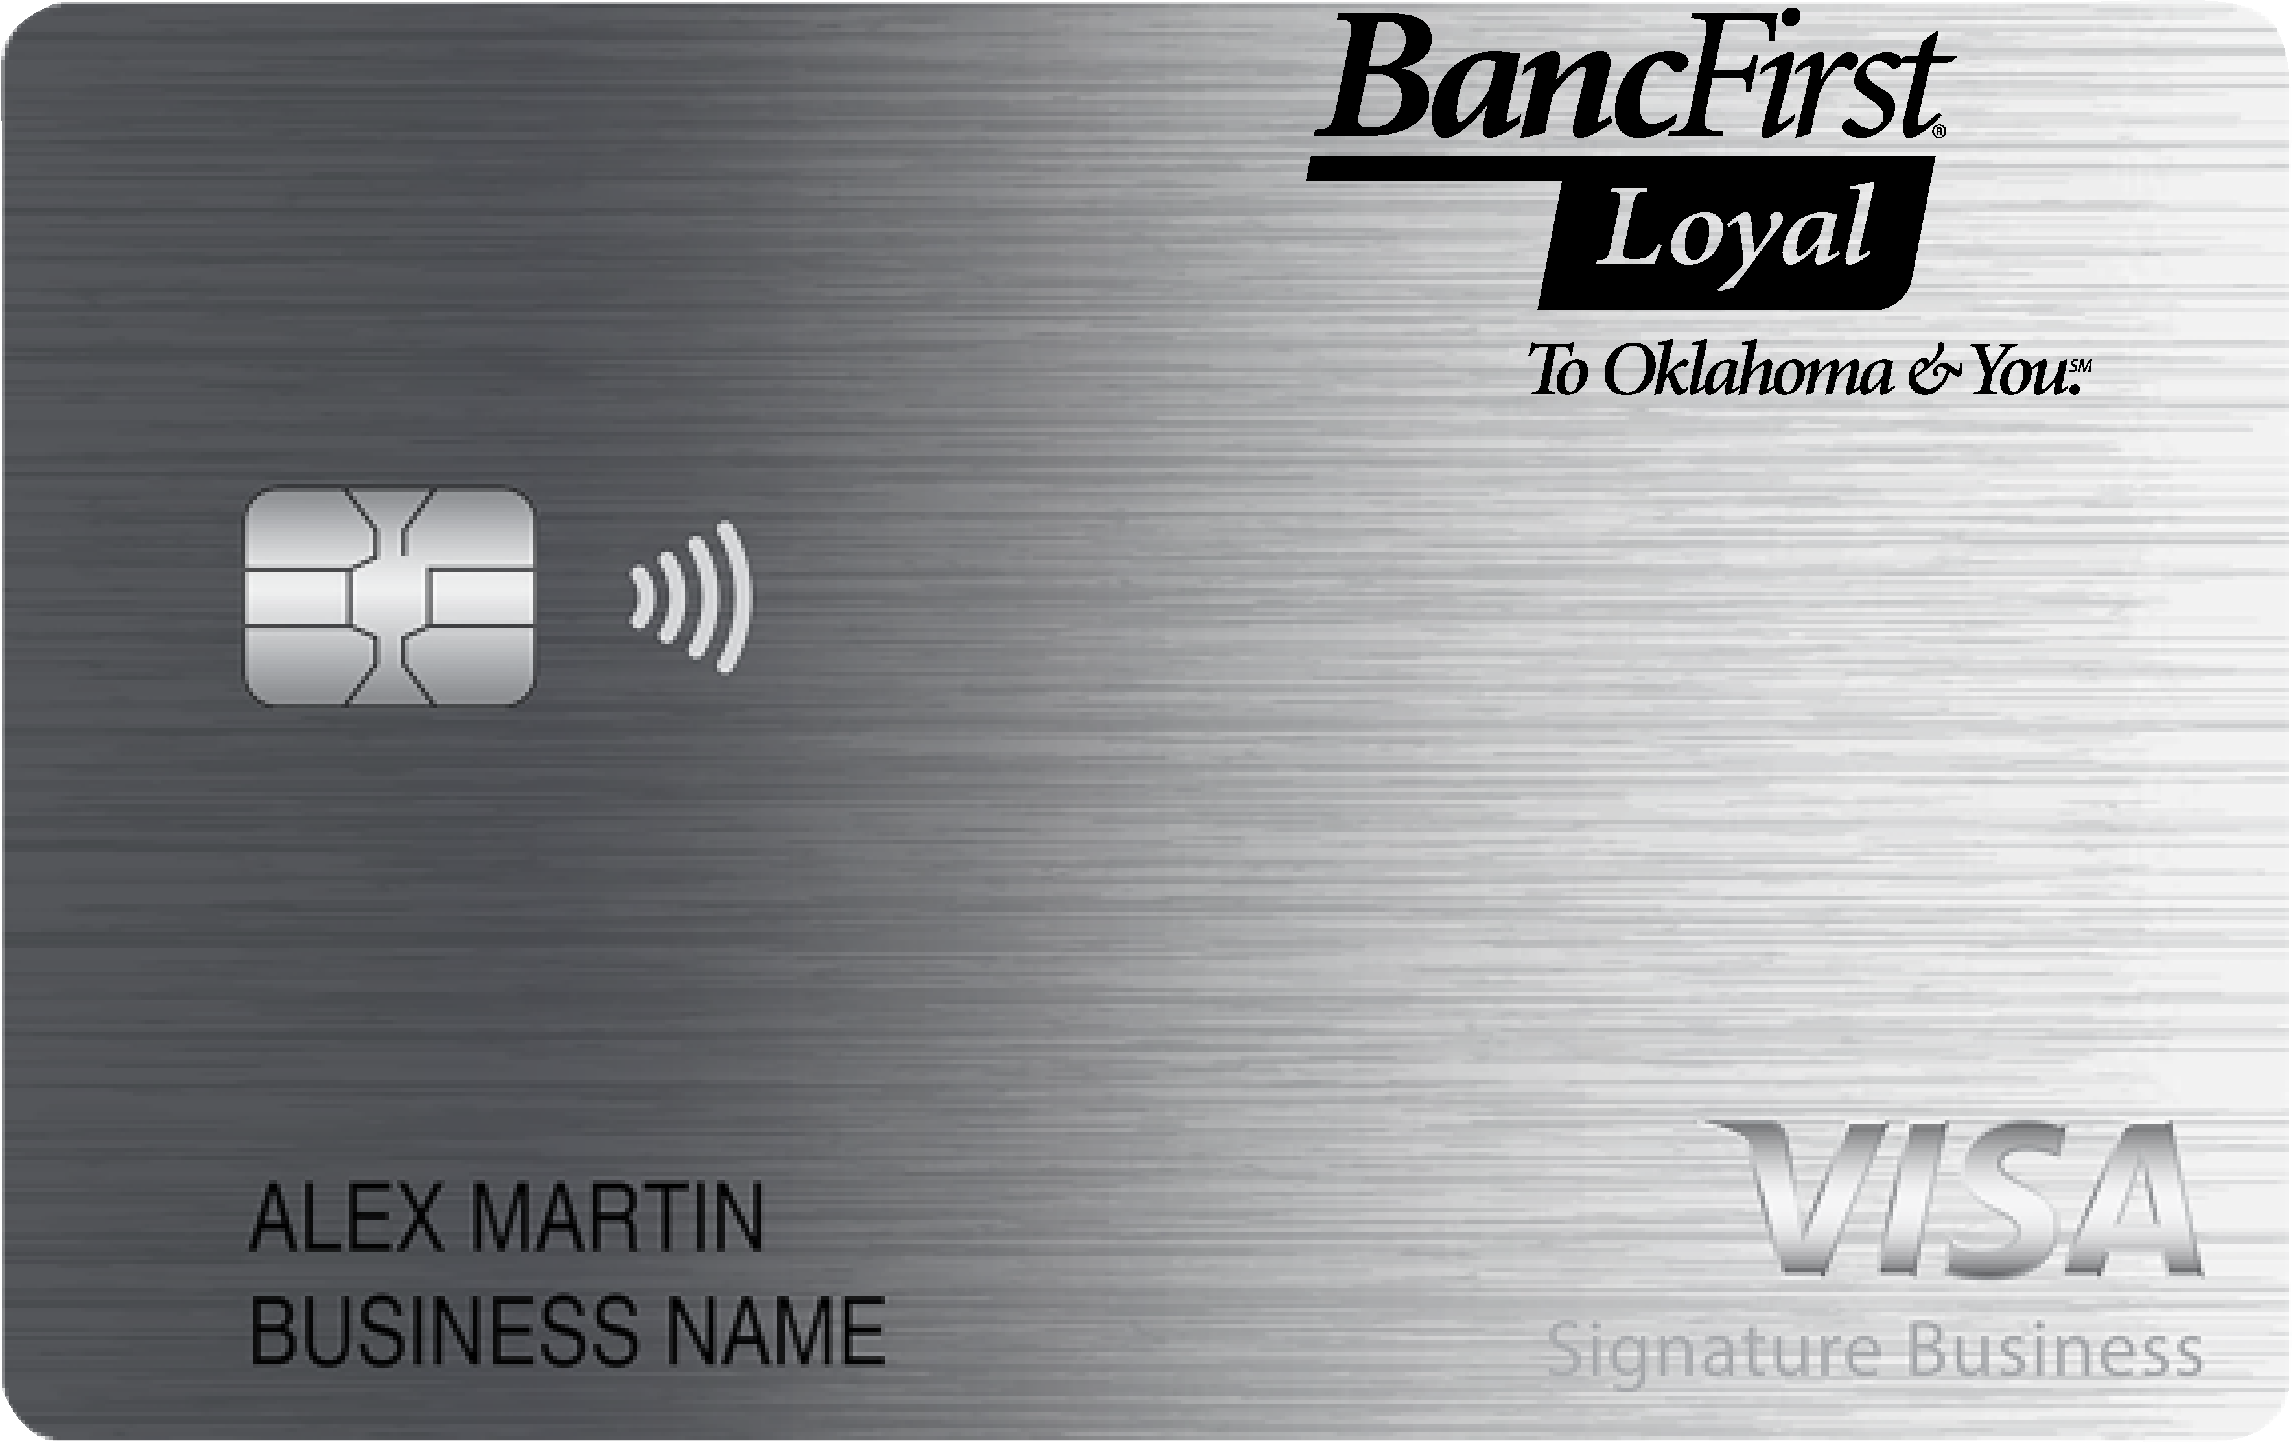 BancFirst Smart Business Rewards Card